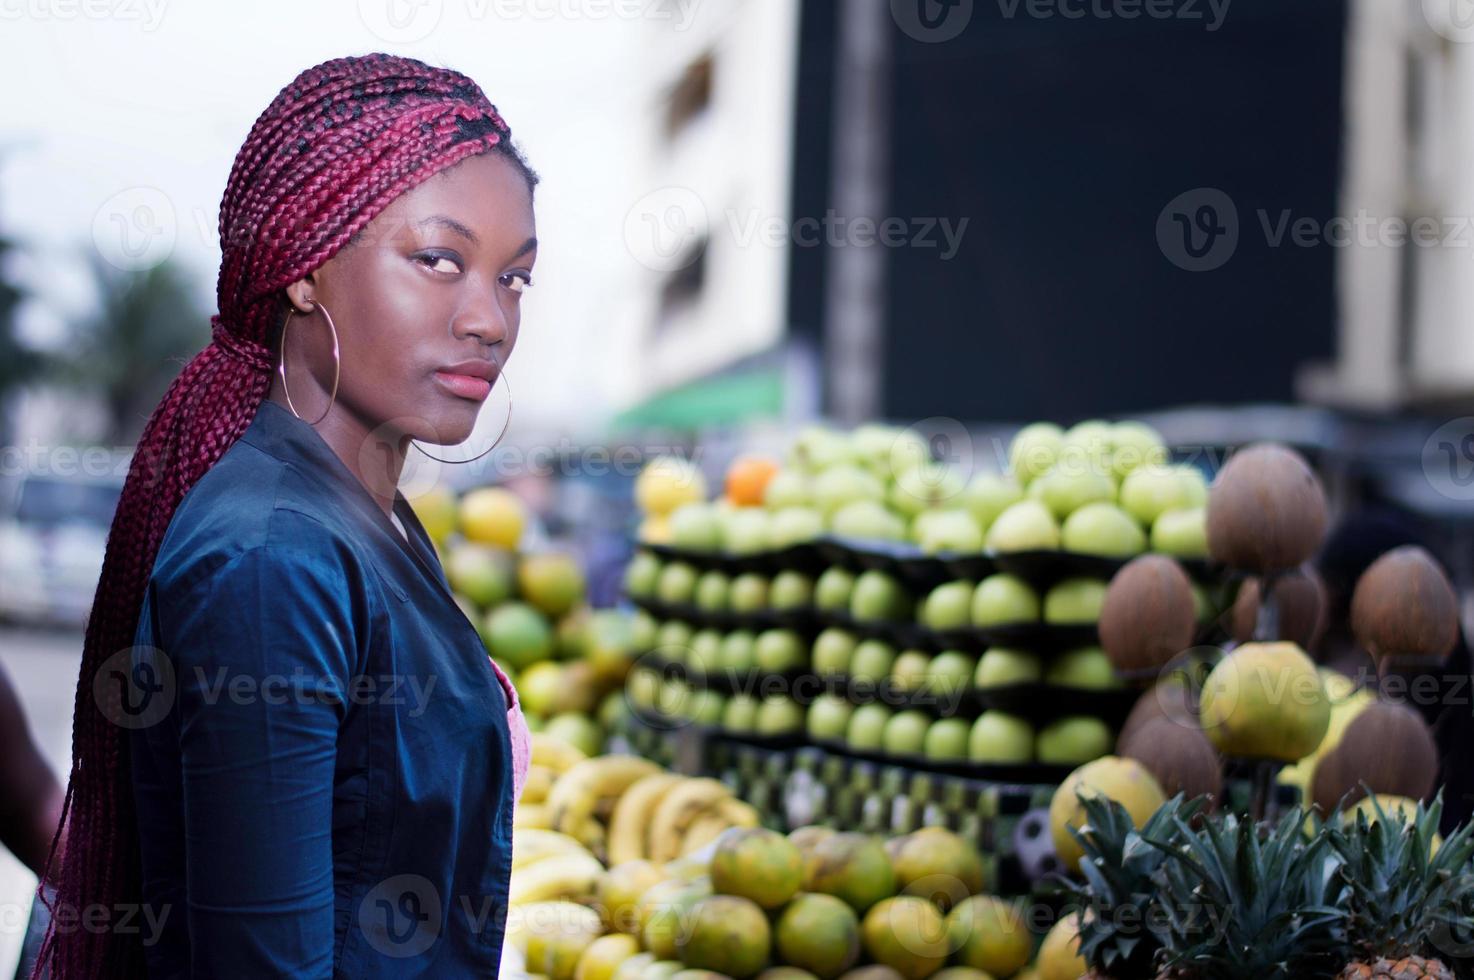 jovem em frente a prateleiras de frutas para o mercado. foto